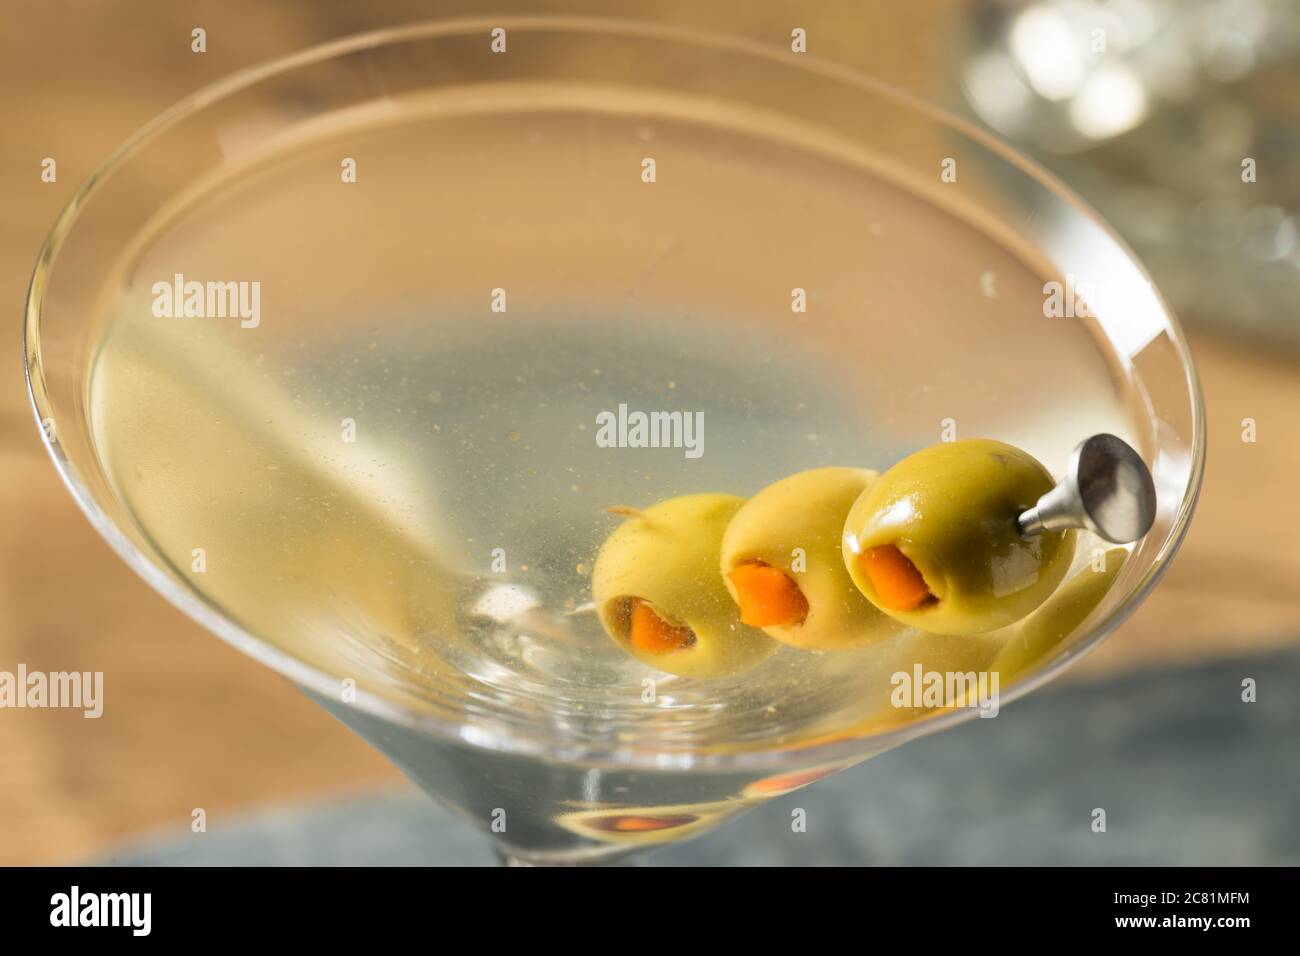 Martinis de borraja tradicional con adornamiento de oliva Foto de stock